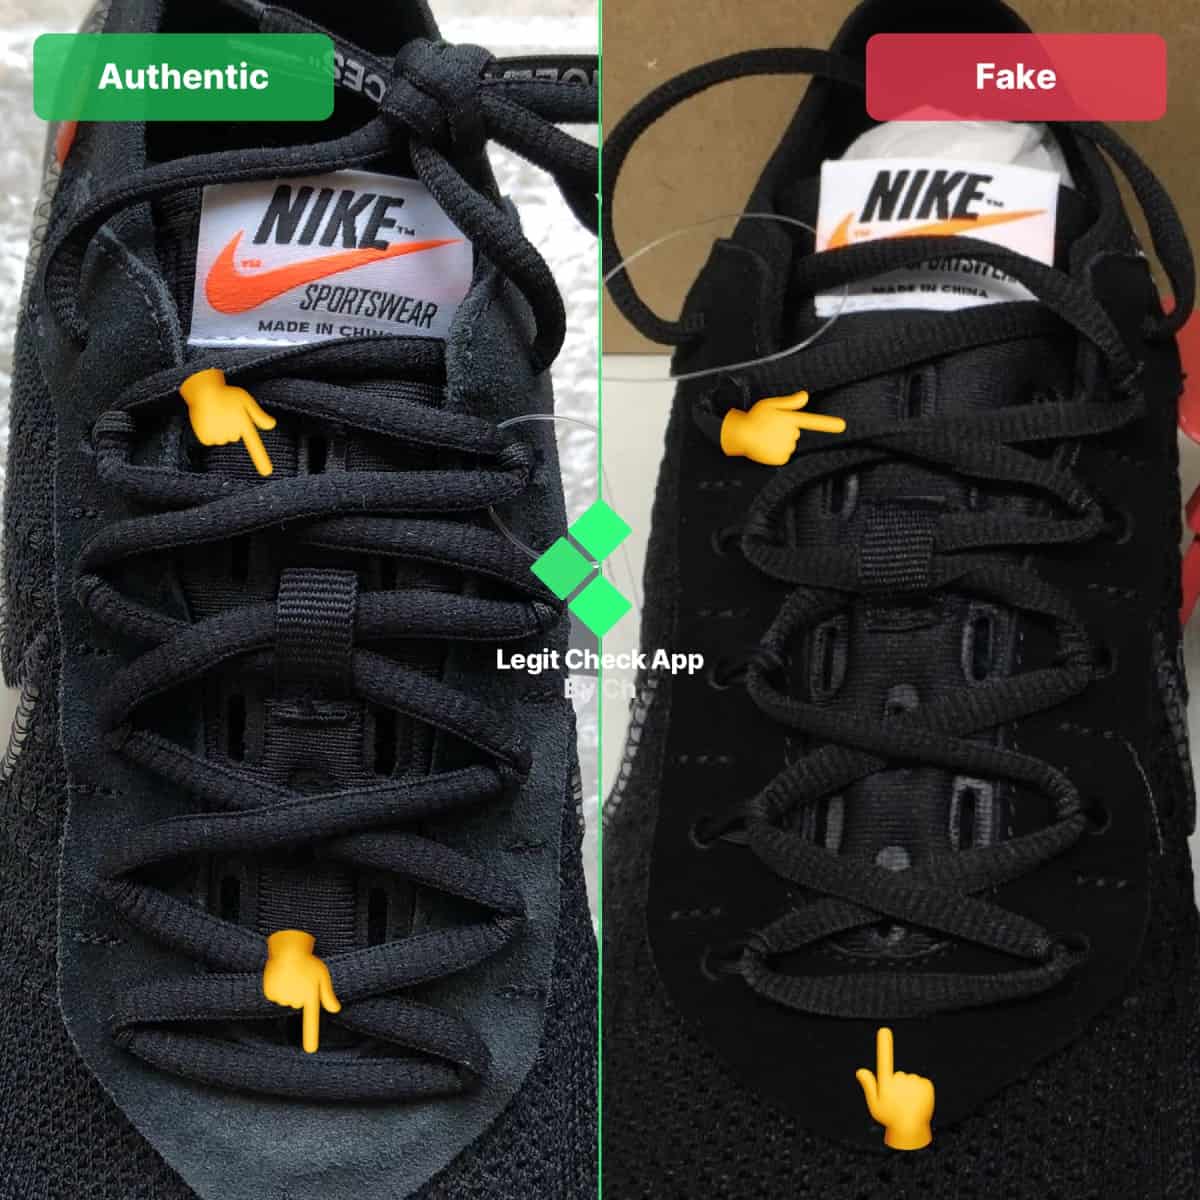 fake vs real vapormax lace loops